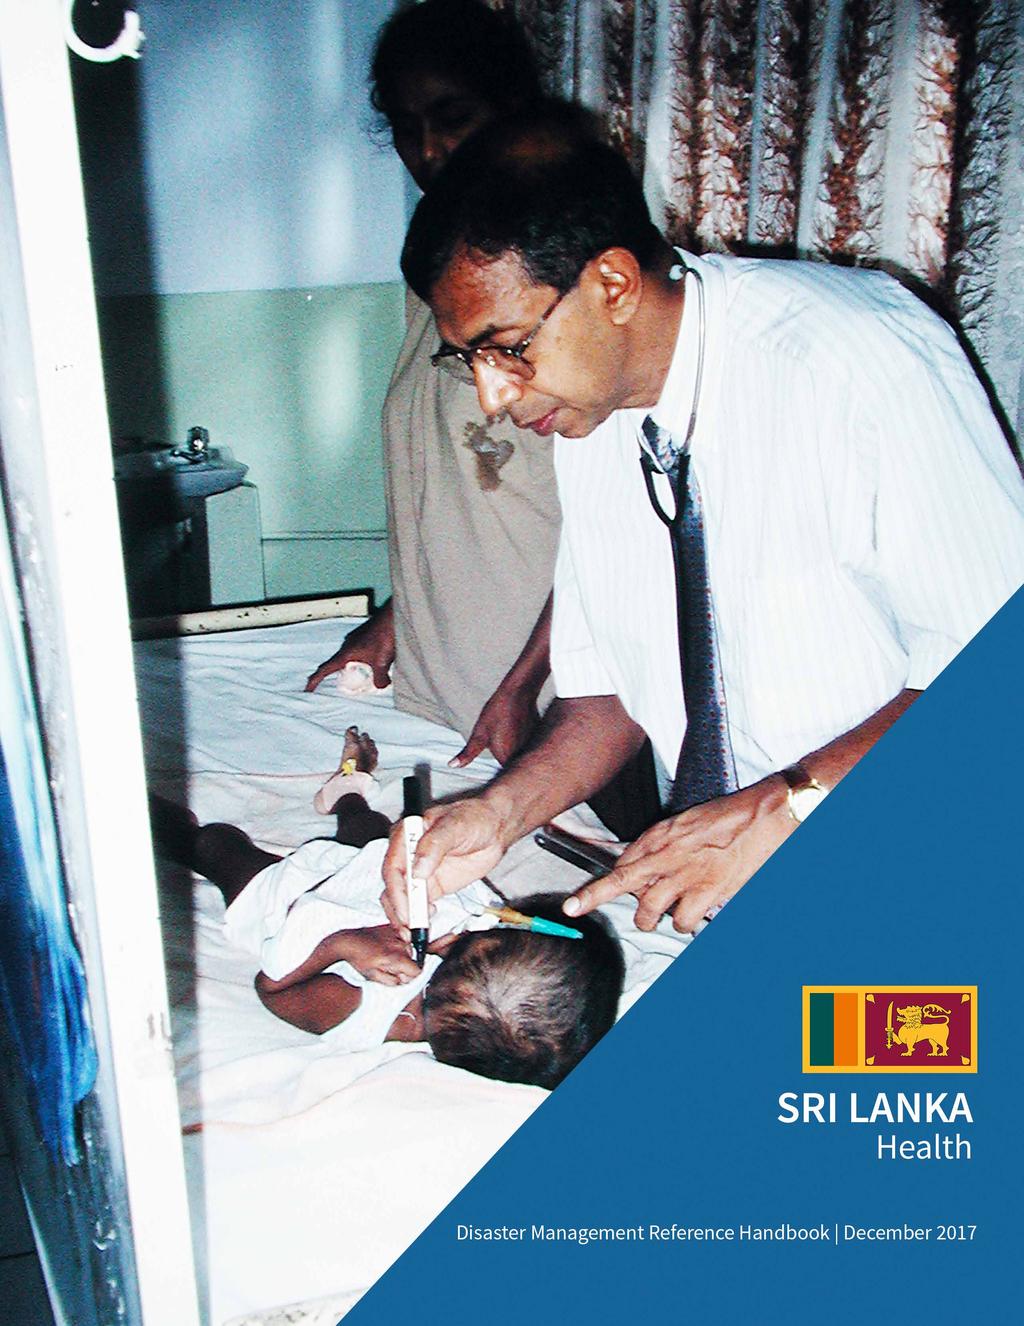 Sri Lanka Disaster Management